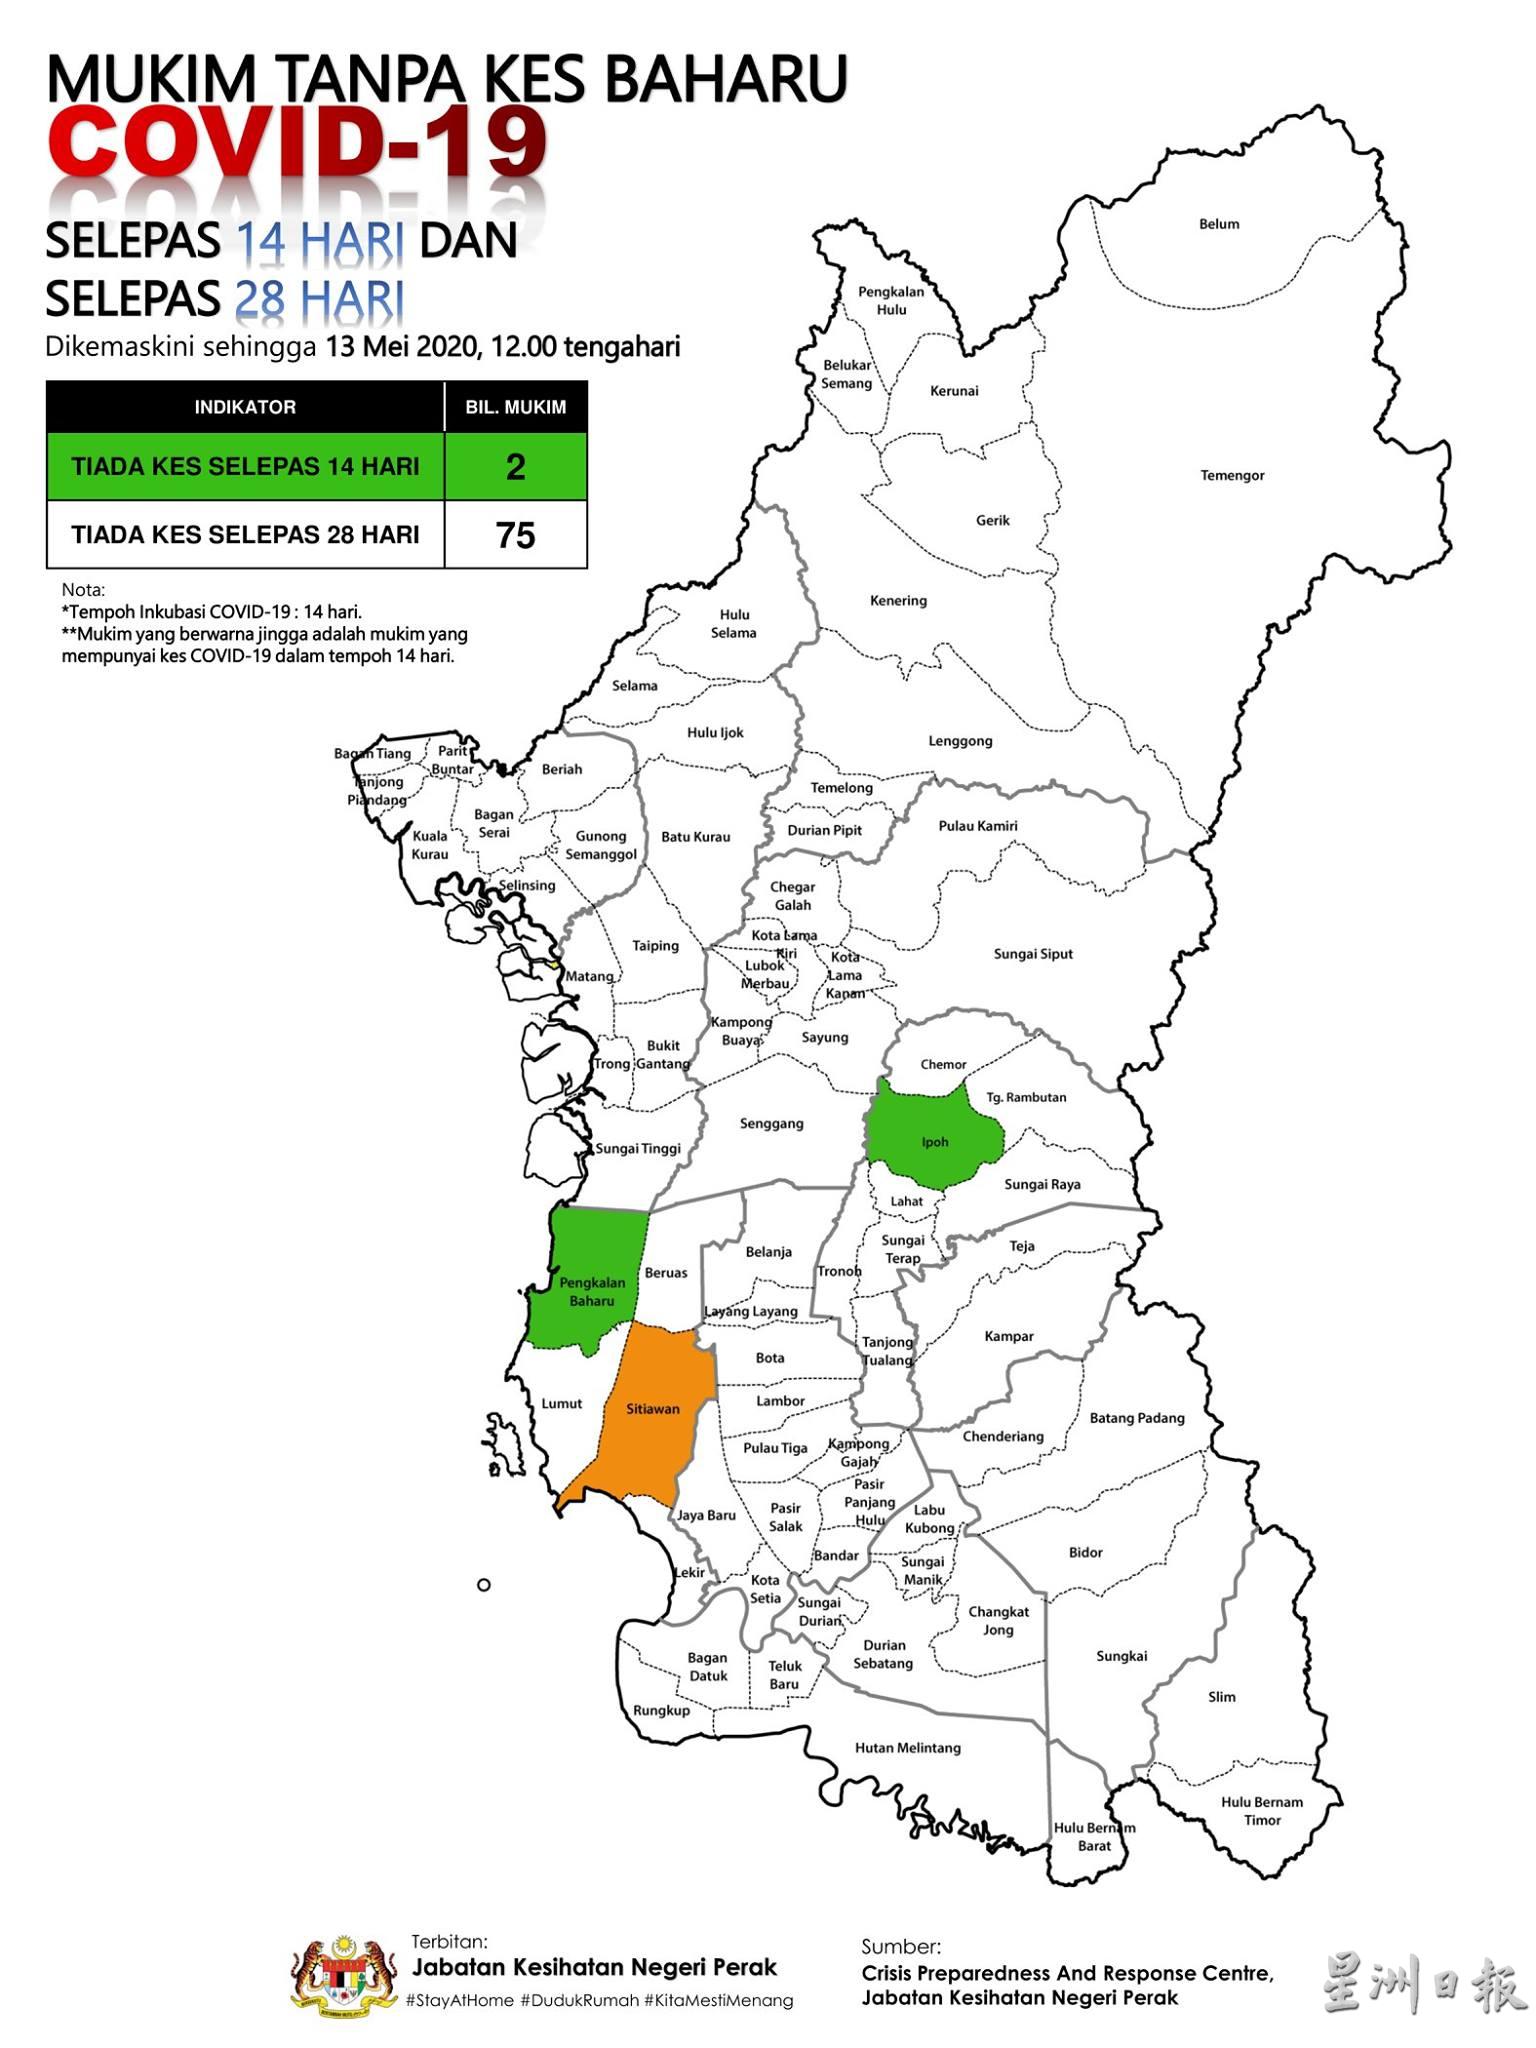 霹雳州卫生局的数据也指，州内过去14天没有冠病确诊病例的地区只剩下2个（绿区），即是怡保及孟加兰峇鲁。